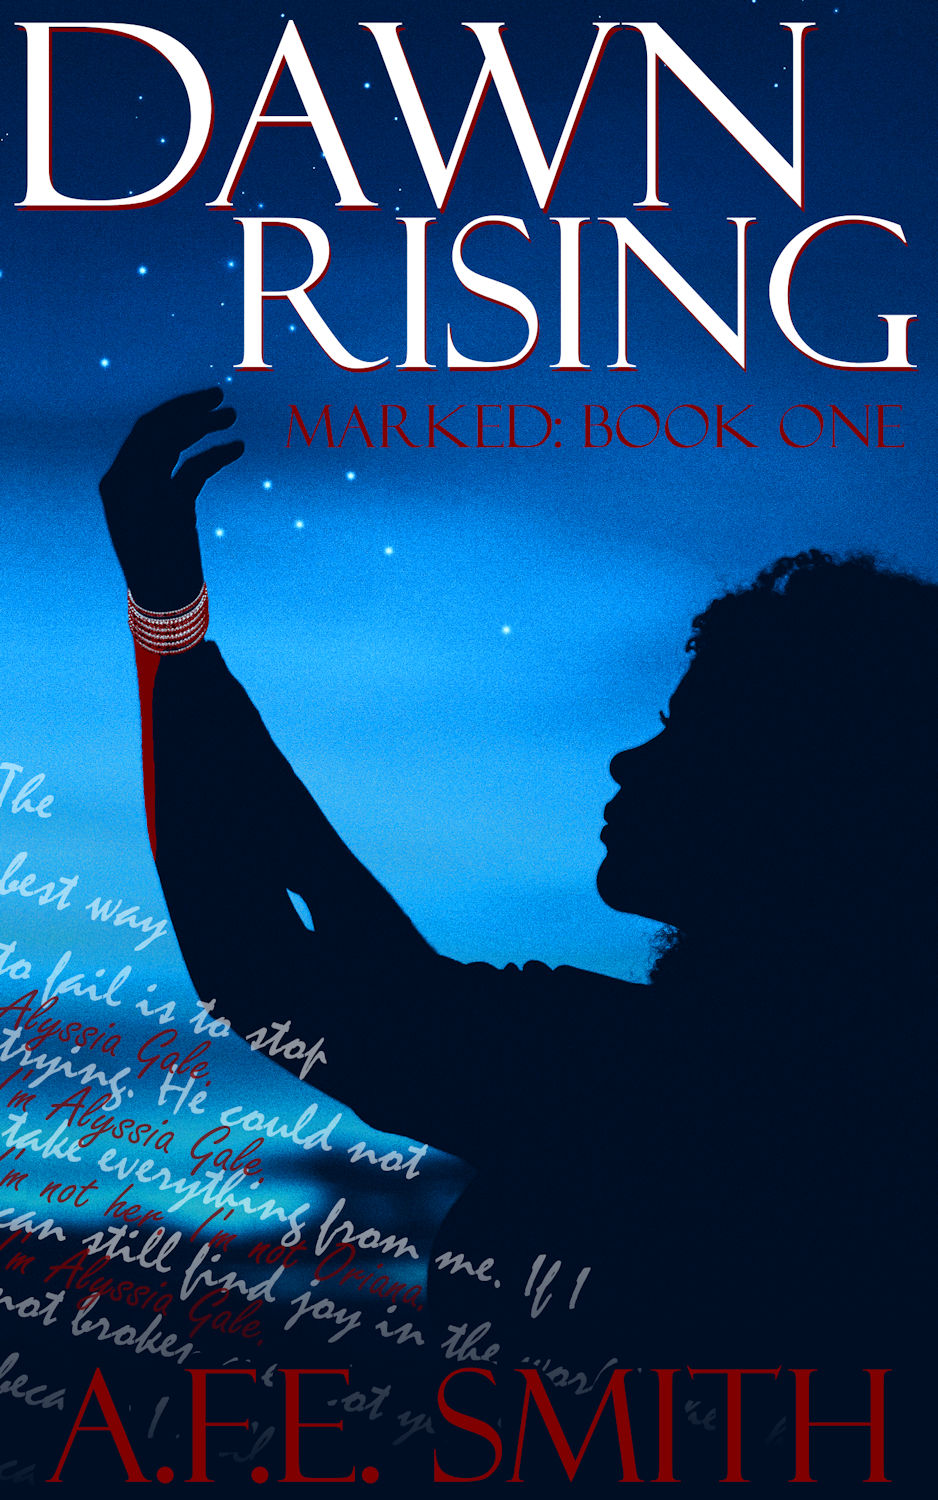 Dawn Rising (cover)